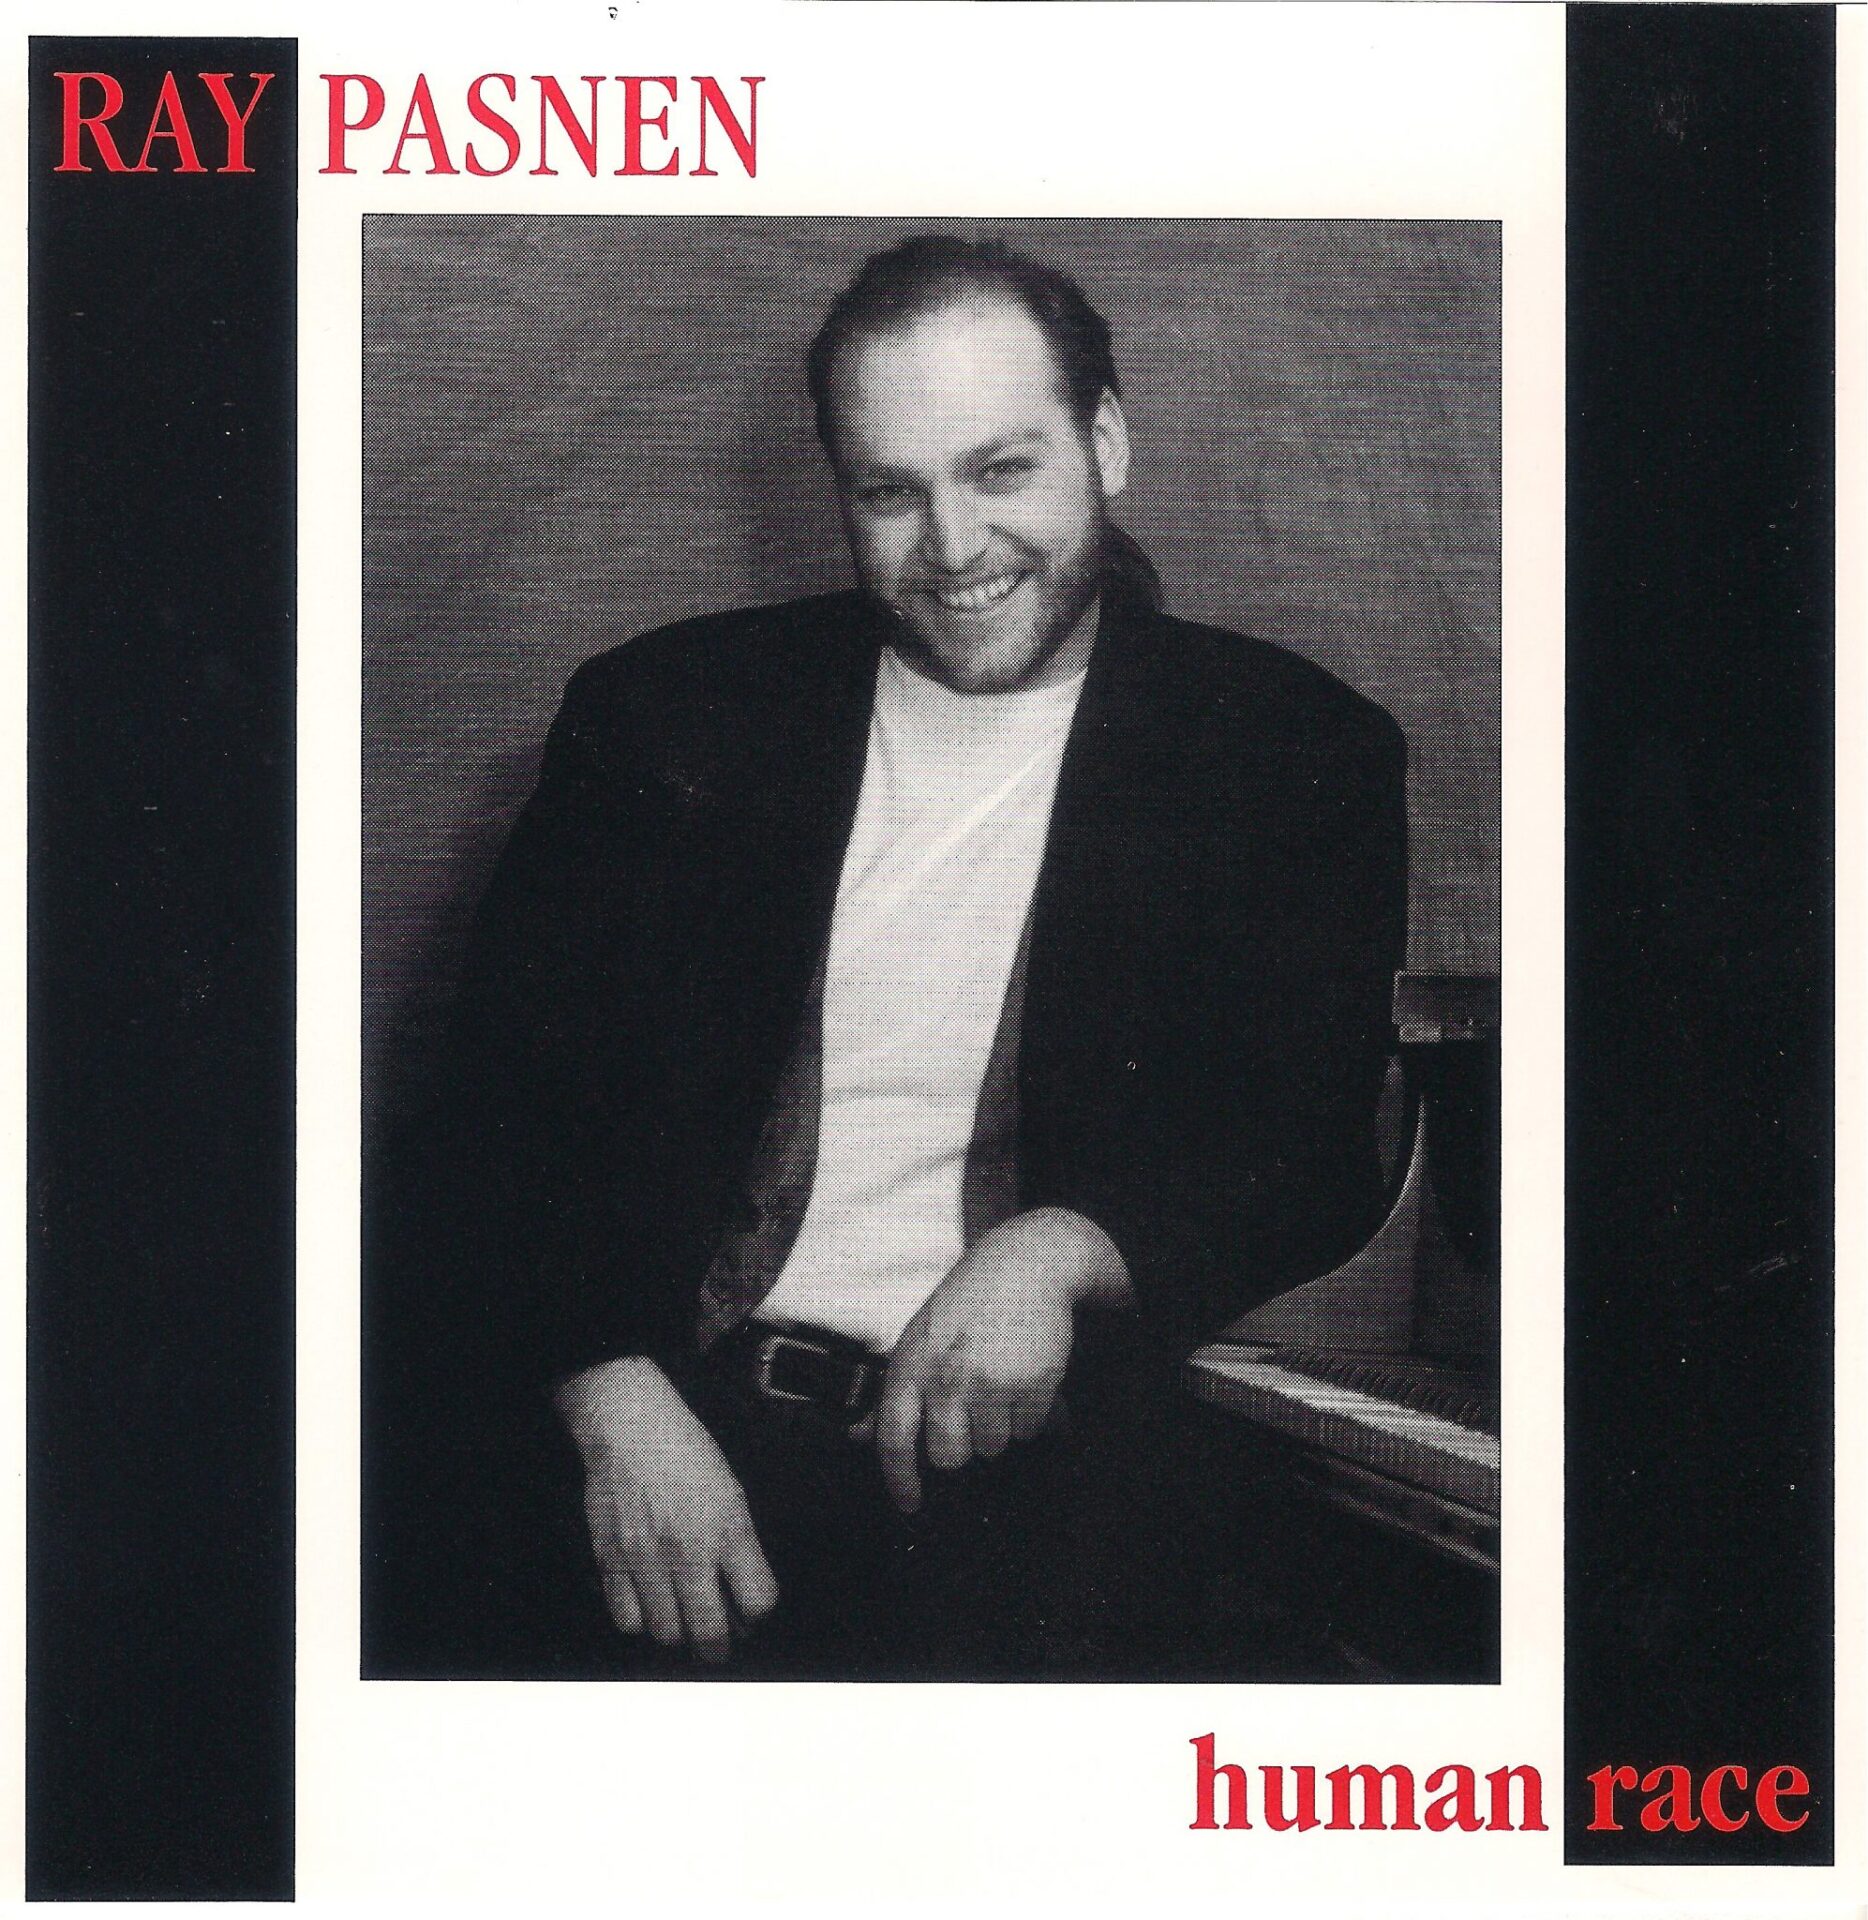 Re-release of ‘Human Race’ album 1992